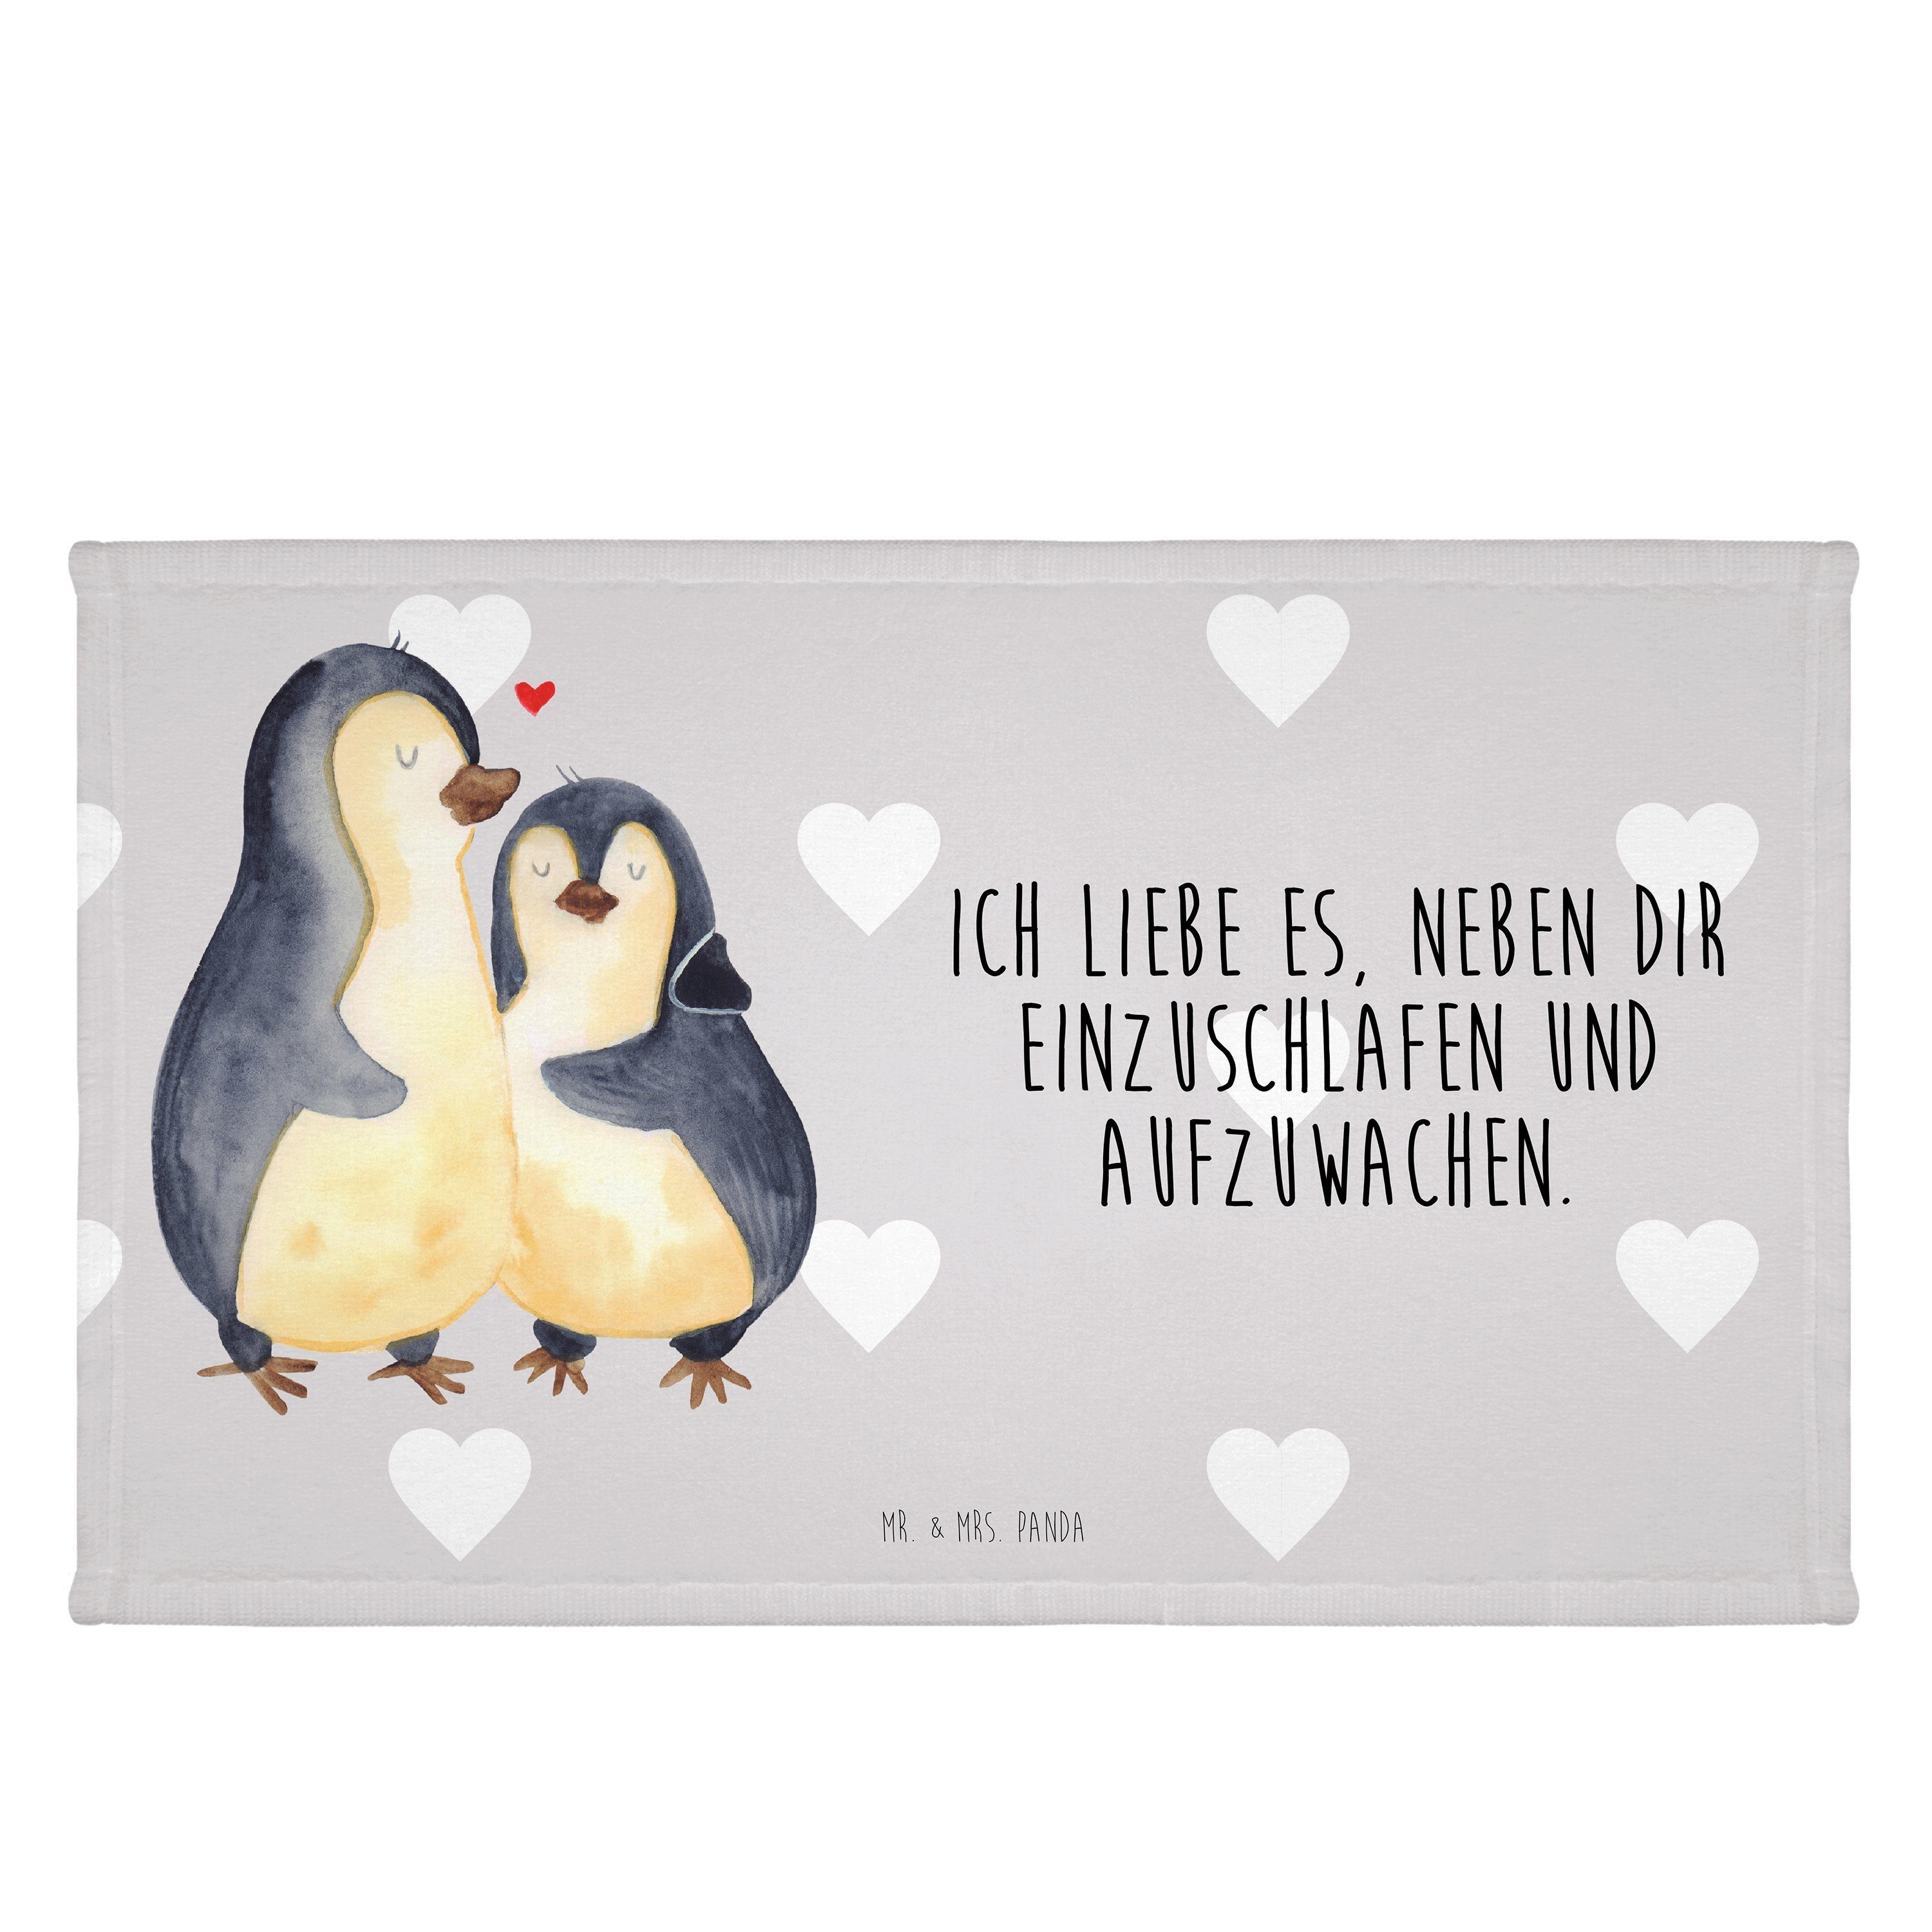 Mr. & Mrs. Panda Handtuch Pinguine Einschlafen - Grau Pastell - Geschenk, Hochzeitstag, Liebesg, (1-St)